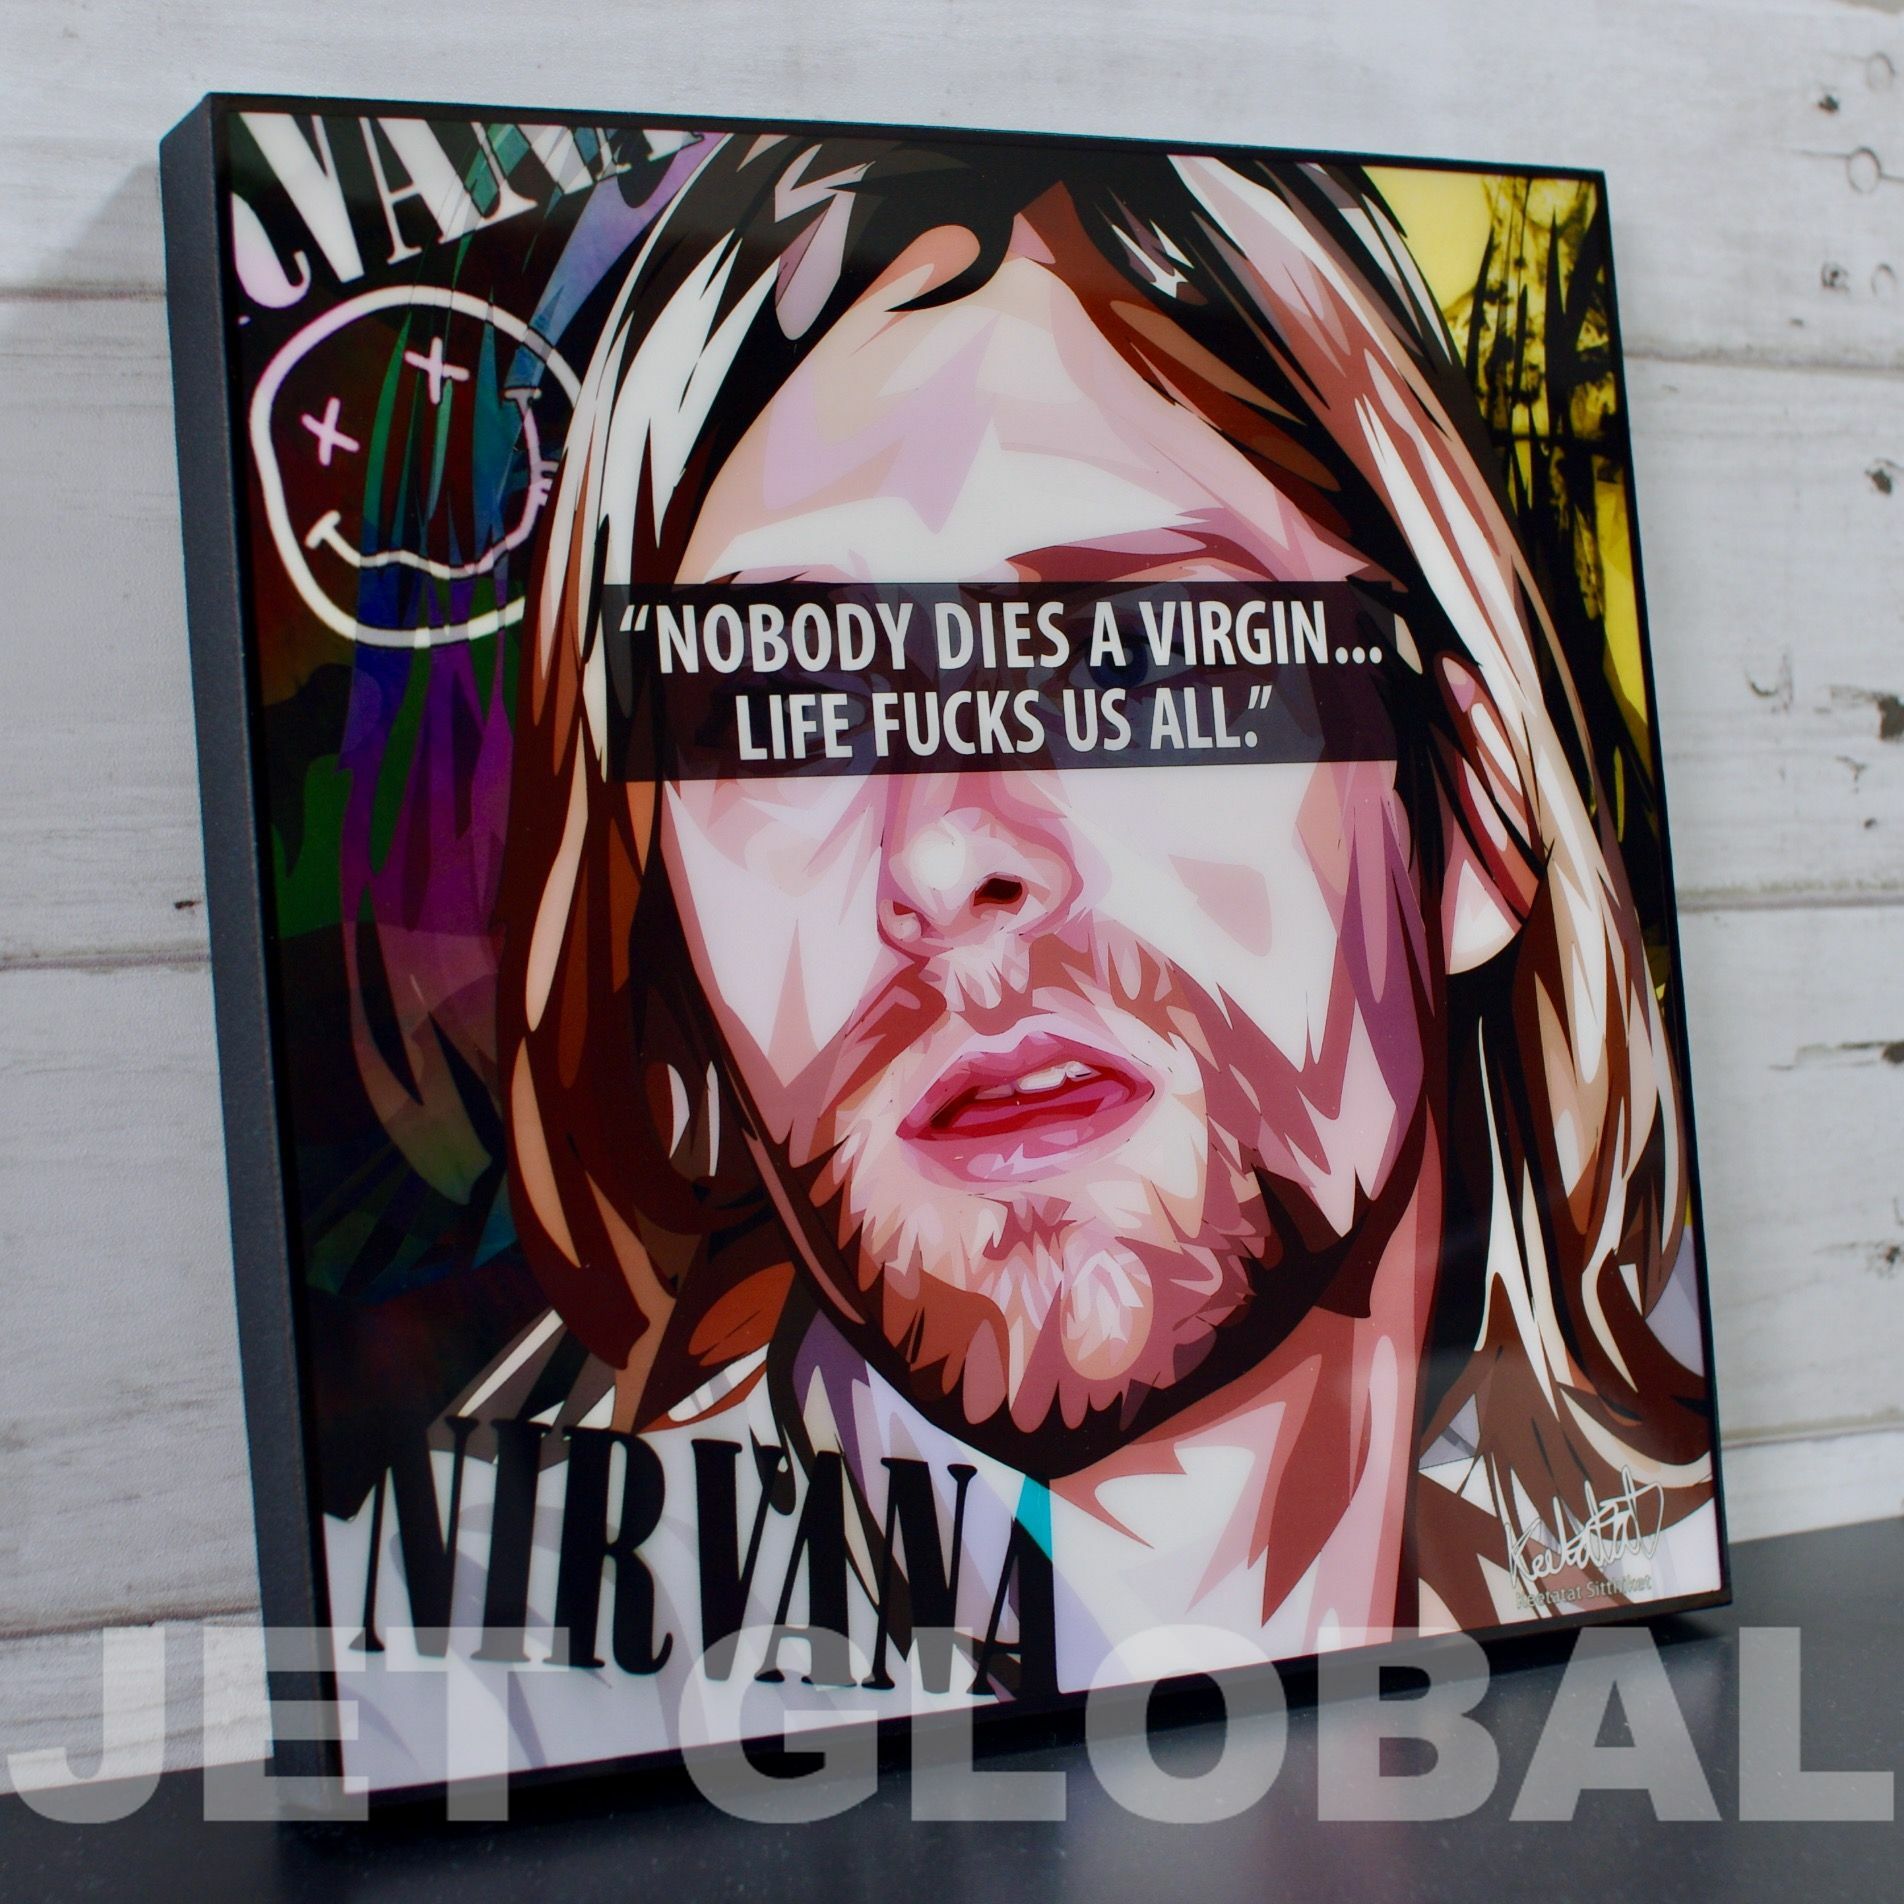 カート コバーン ニルヴァーナ Kurt Cobain Nirvana サイズ 26cm Papm 0173 ポップアートパネル フレーム公式通販サイト 商品数1000点超え